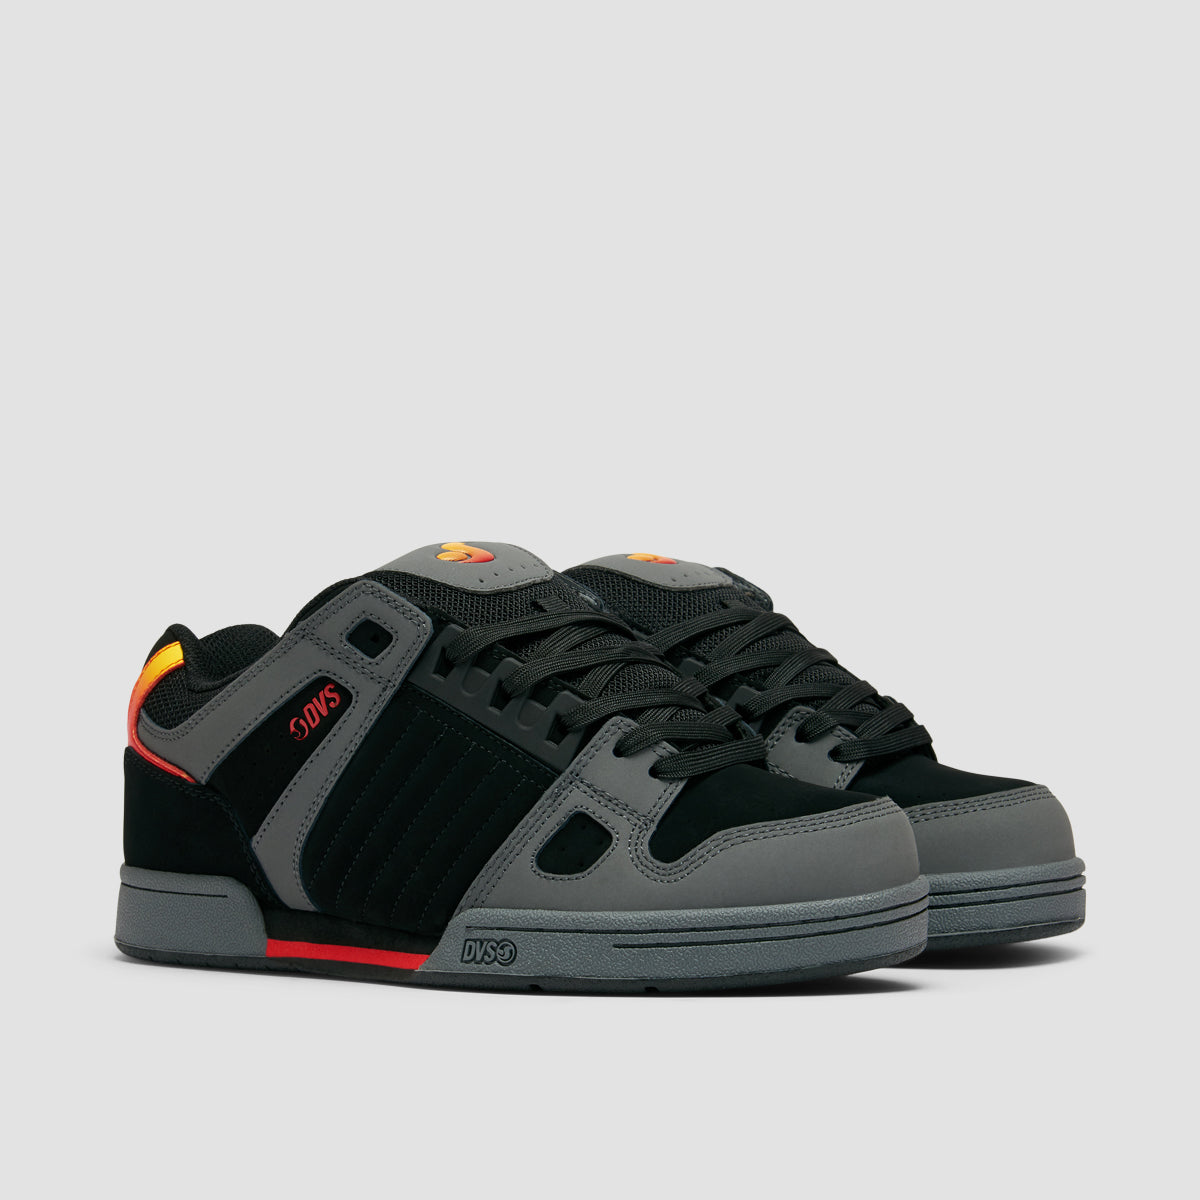 DVS Celsius Shoes - Charcoal/Black/Red Nubuck